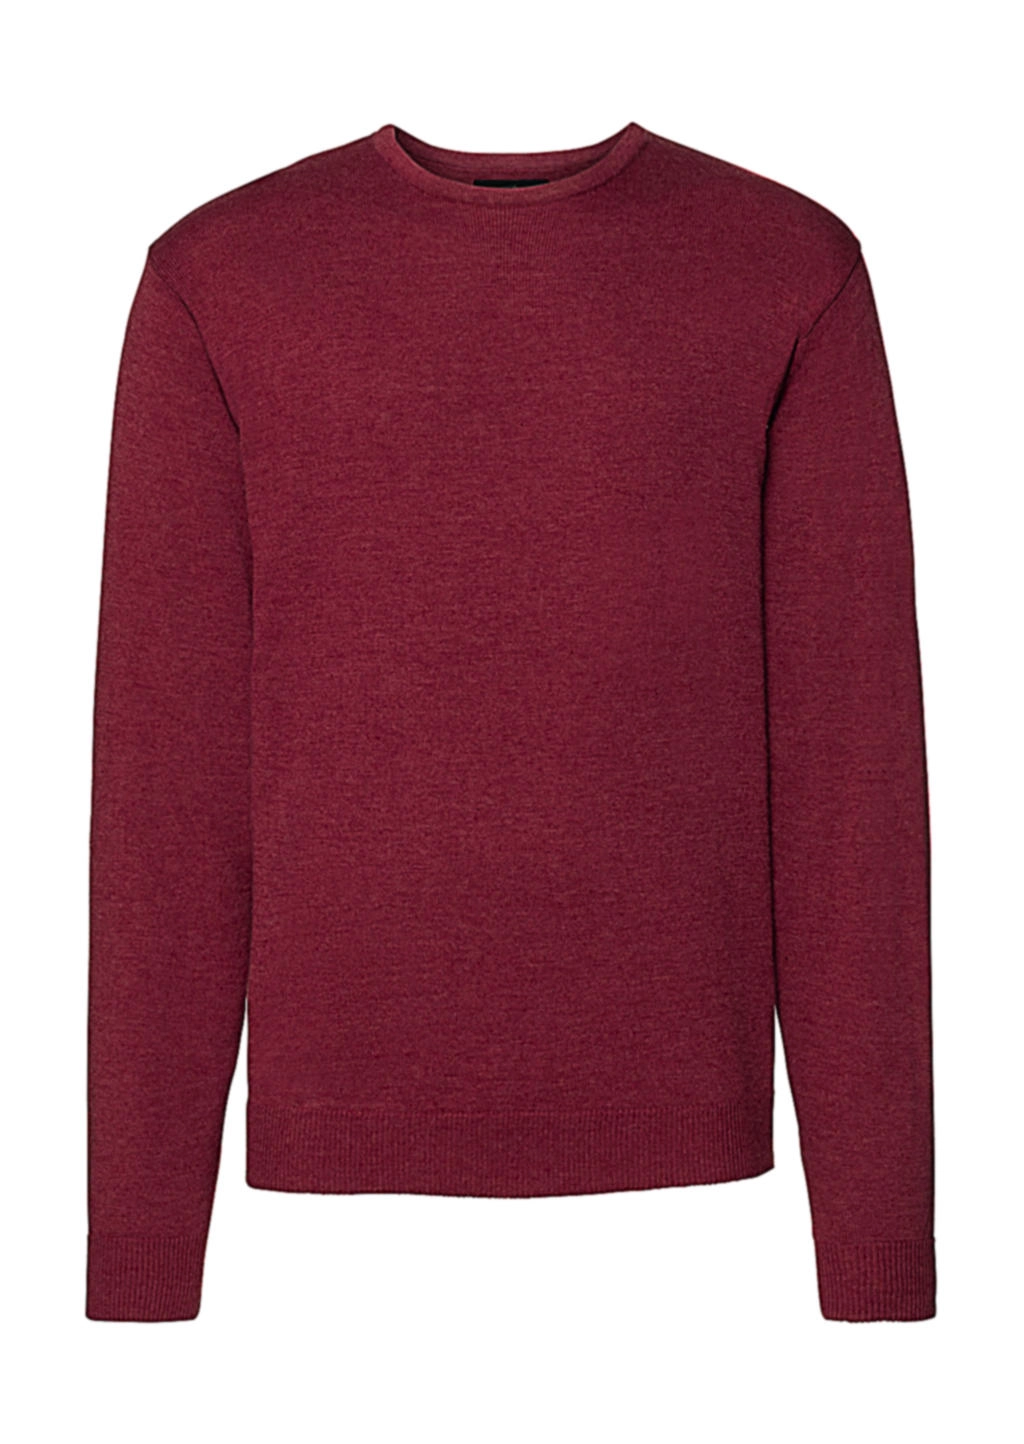 Men`s Crew Neck Knitted Pullover zum Besticken und Bedrucken in der Farbe Cranberry Marl mit Ihren Logo, Schriftzug oder Motiv.